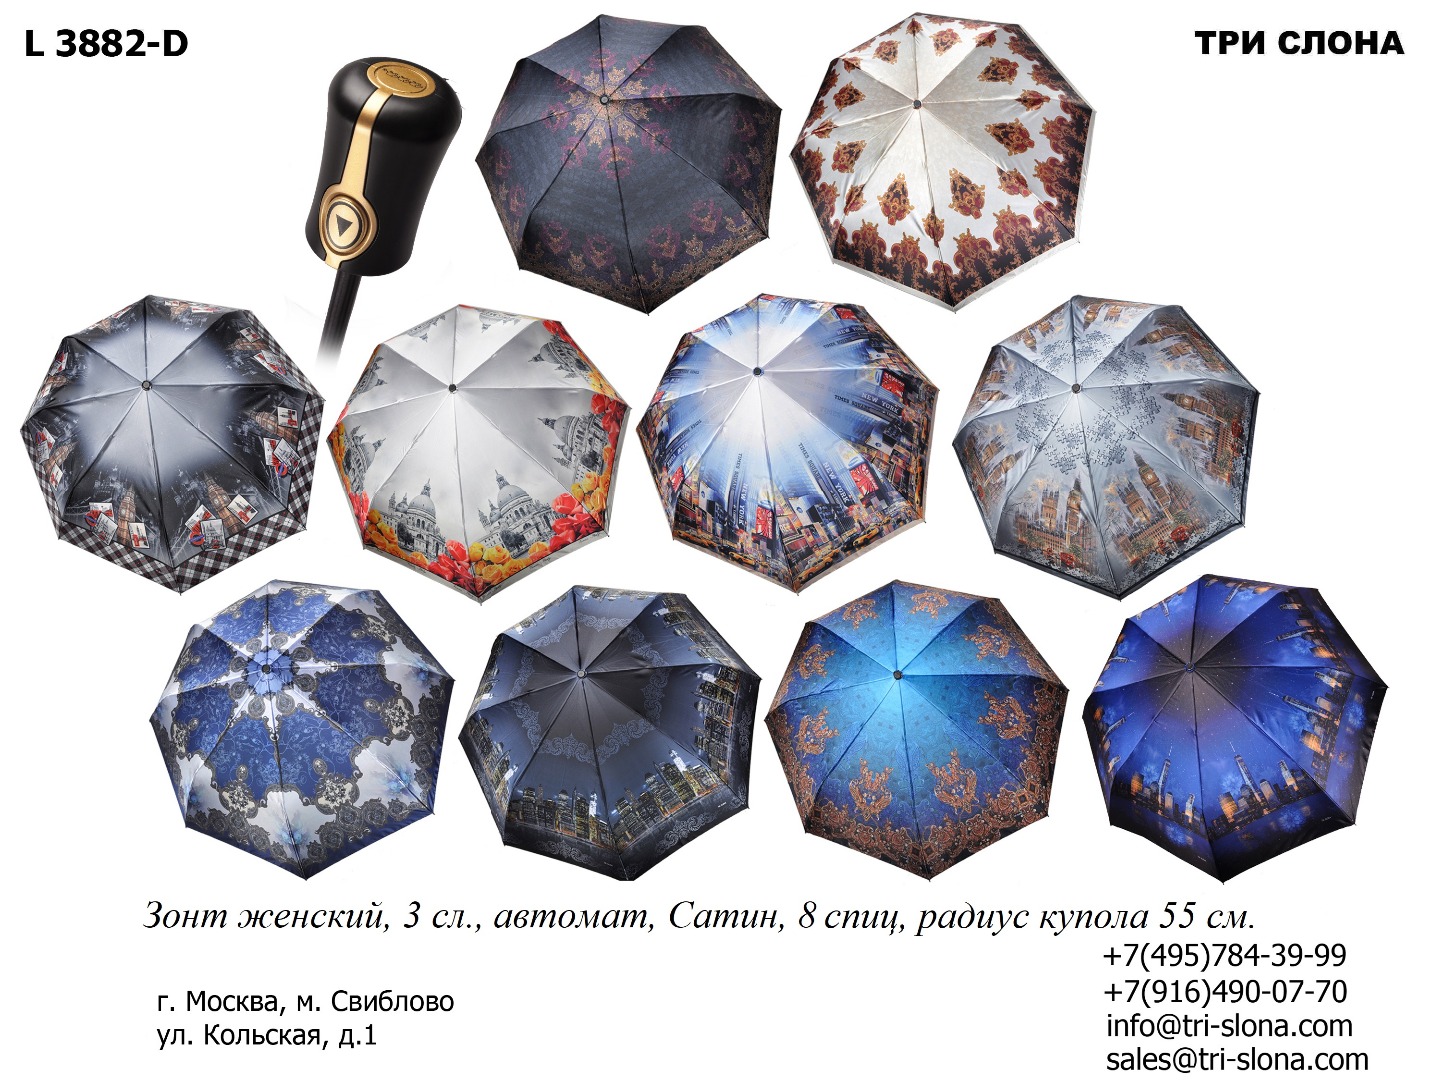 Зонт женский складной Арт L3882 D L 3882 — копия.jpg